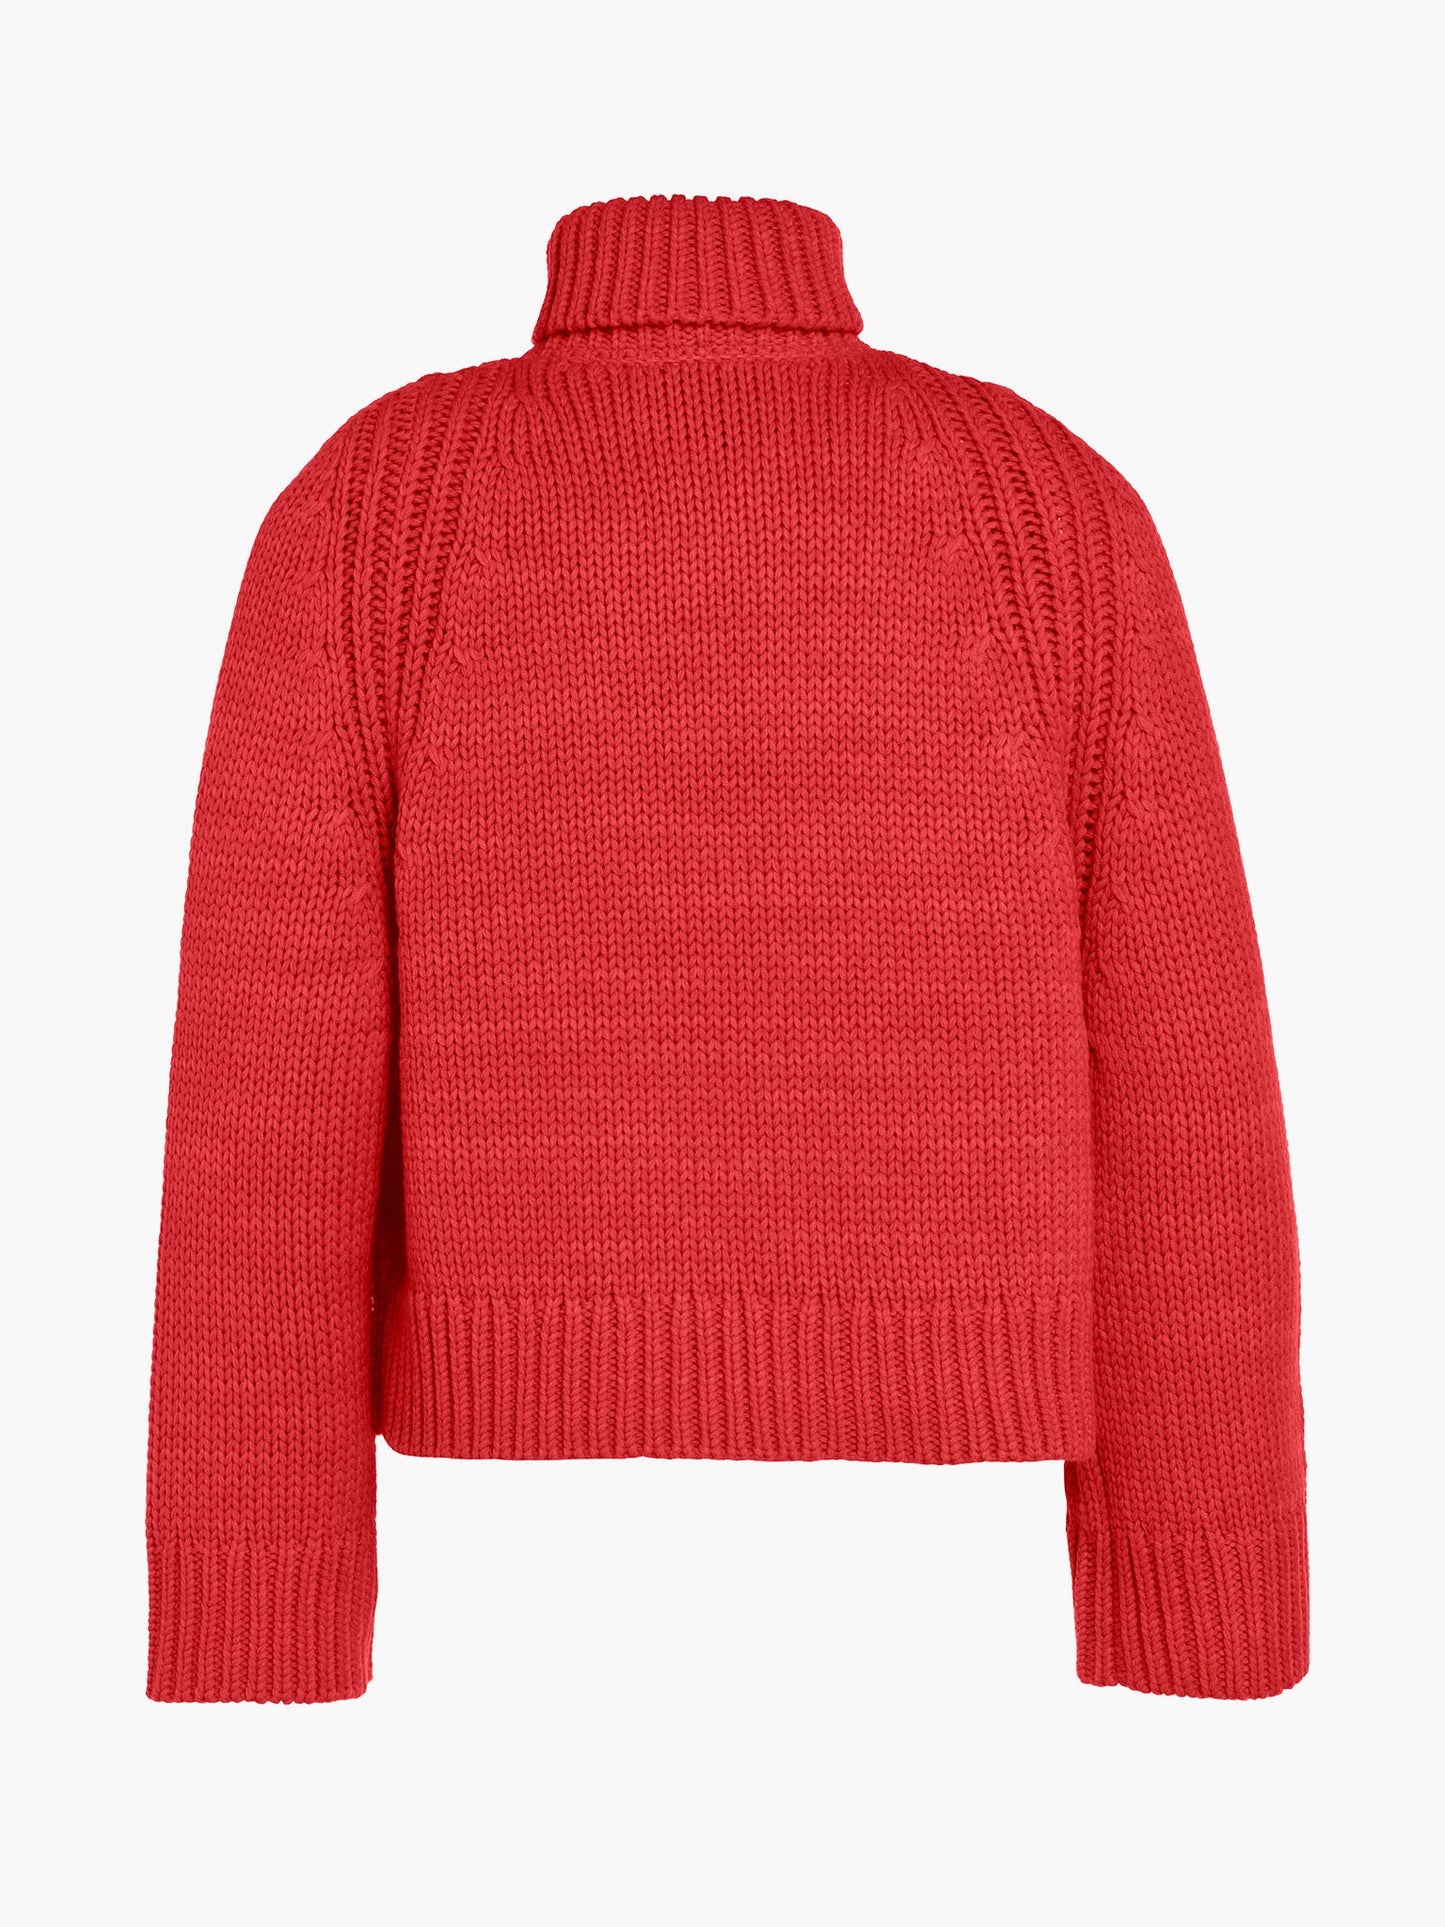 BEAUTY long sleeve knit sweater